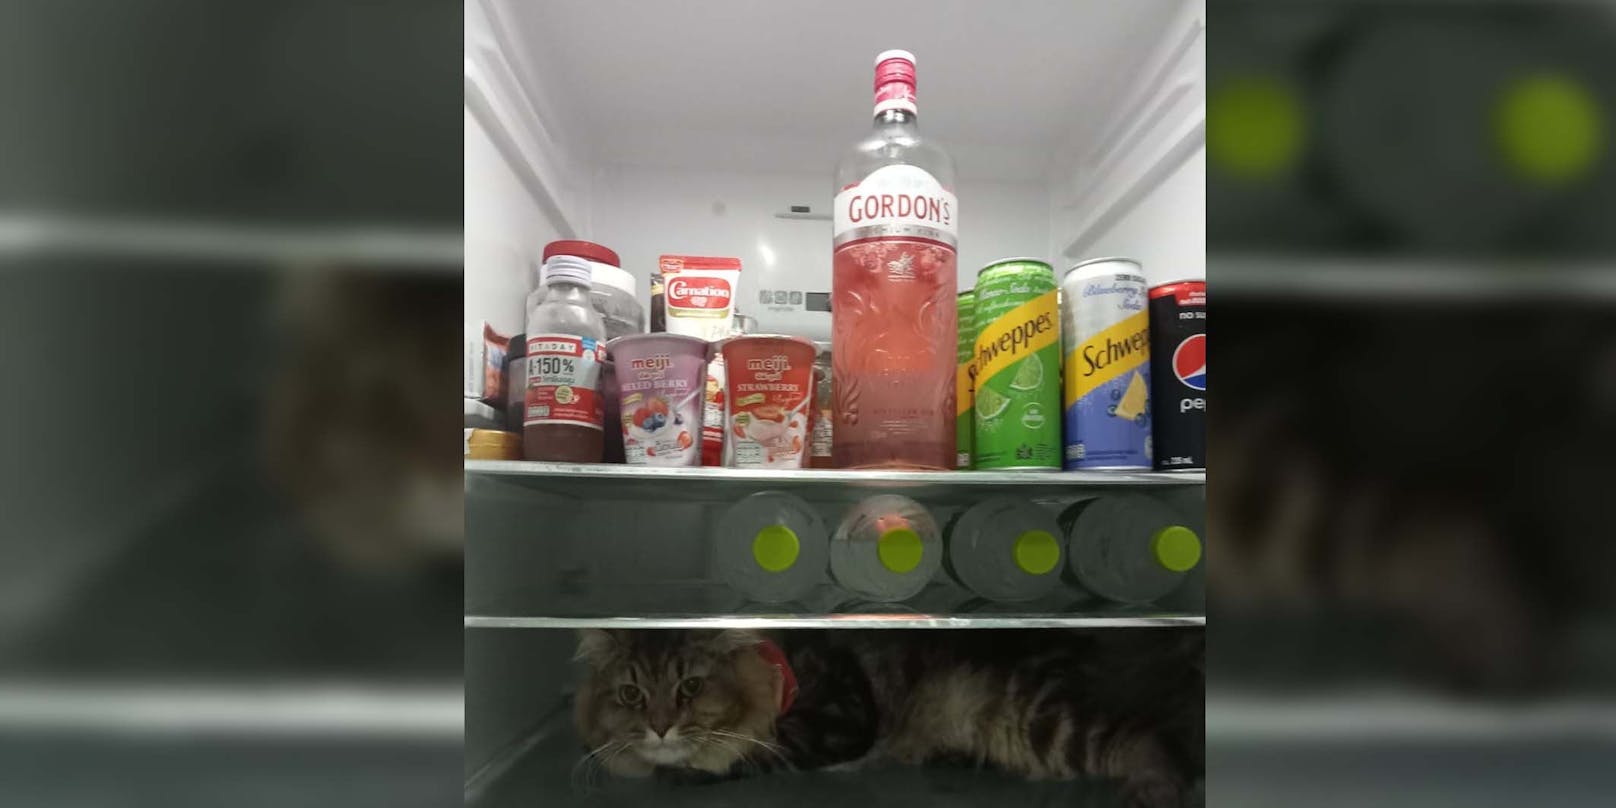 Wiener öffnet Kühlschrank, findet Mitbewohner darin